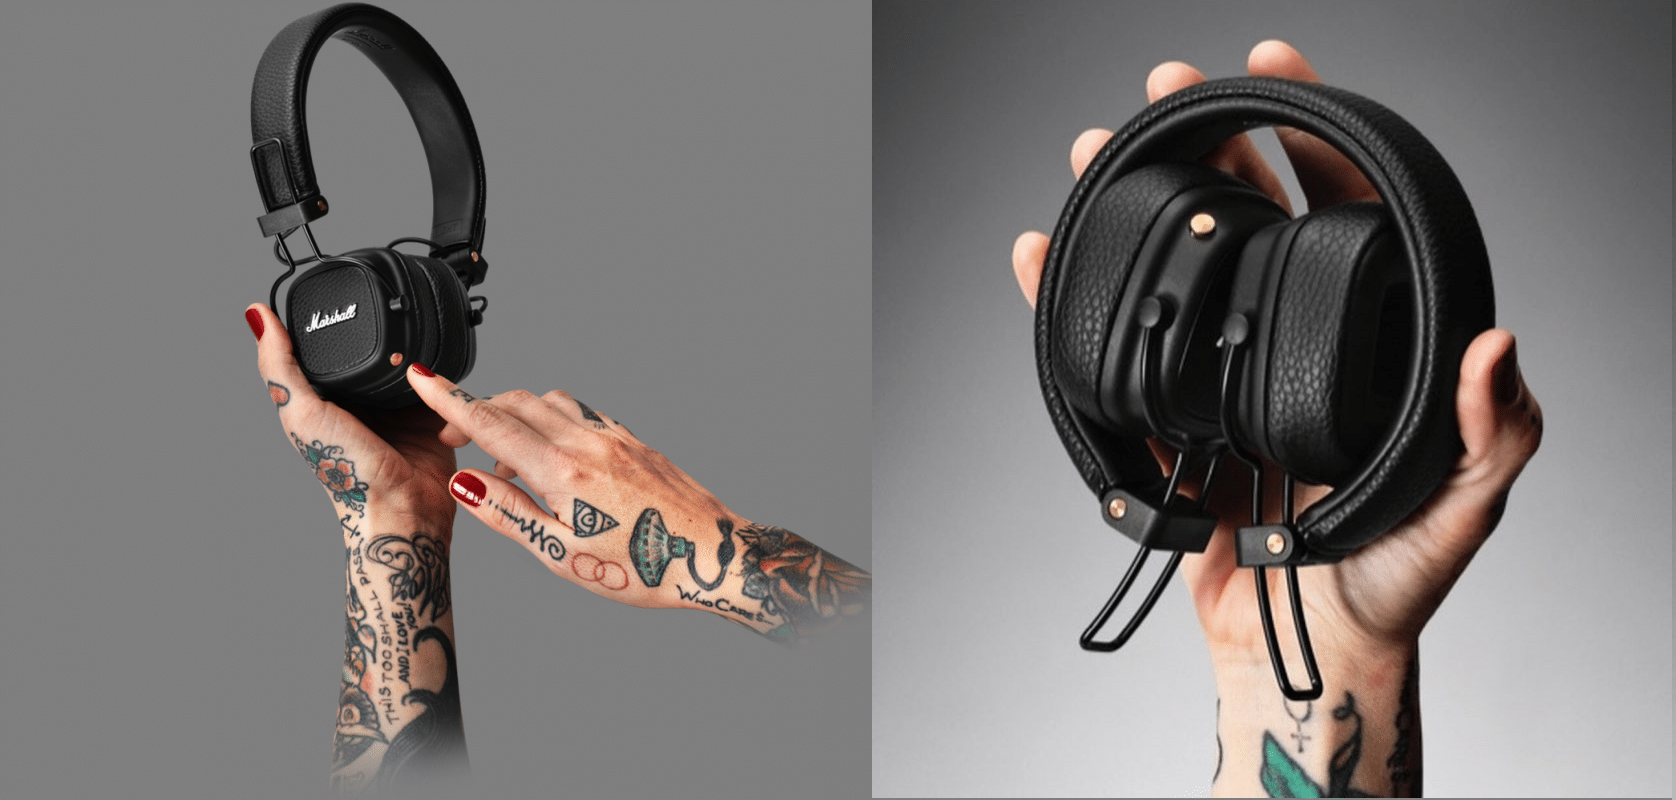 Tai nghe Marshall Major 3 có phần nối 3D linh hoạt giúp dễ dàng điều chỉnh phần chụp tai vừa vặn và không gây đau tai